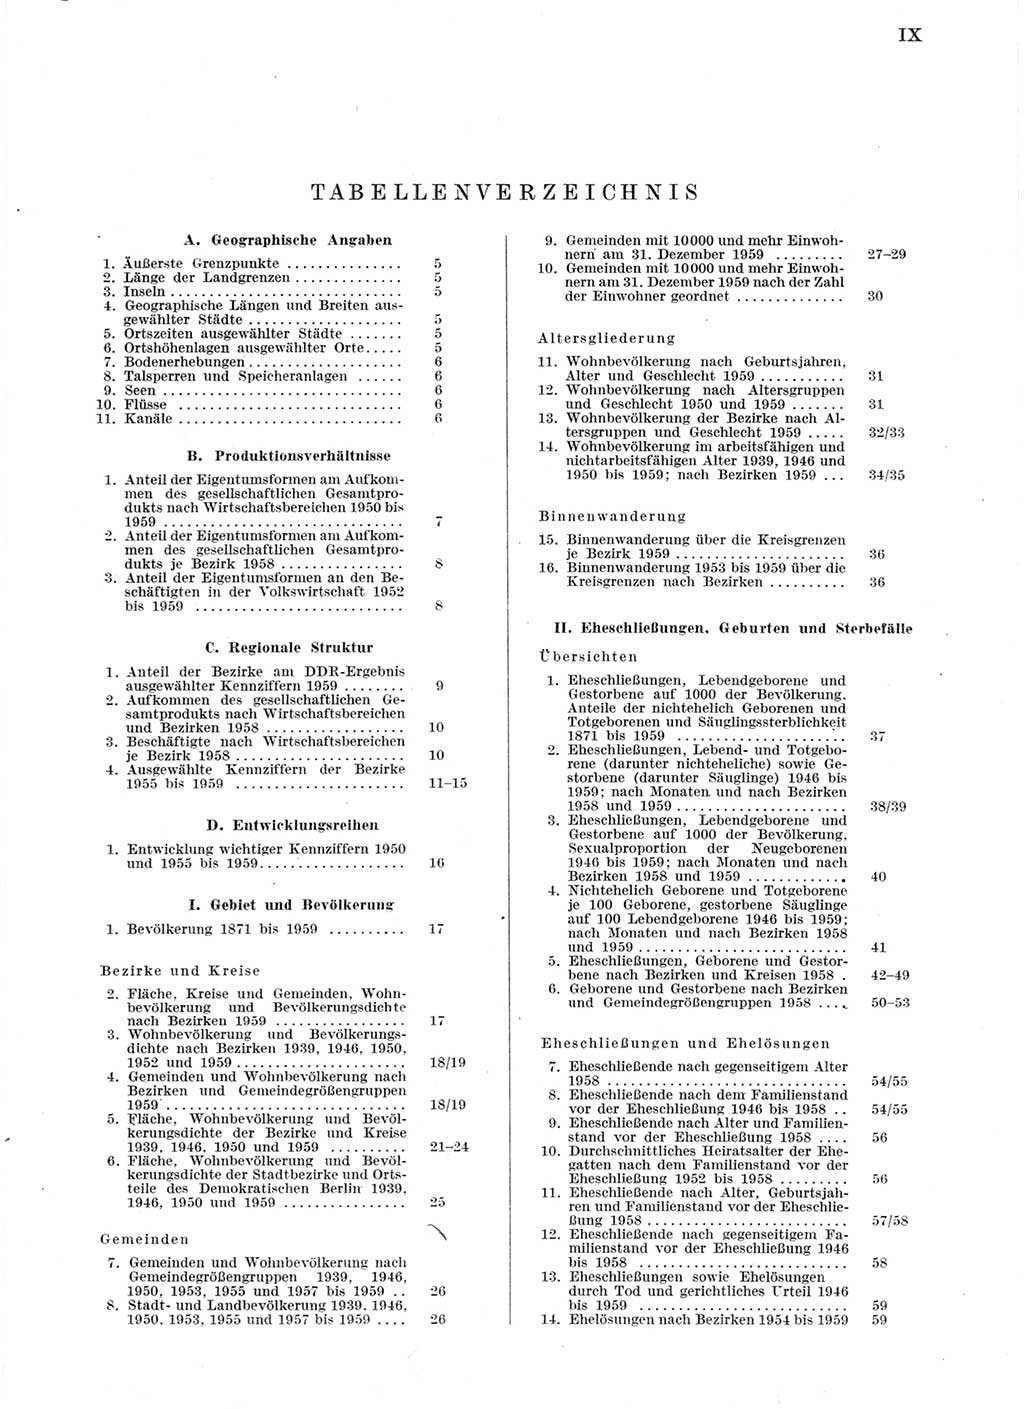 Statistisches Jahrbuch der Deutschen Demokratischen Republik (DDR) 1959, Seite 9 (Stat. Jb. DDR 1959, S. 9)